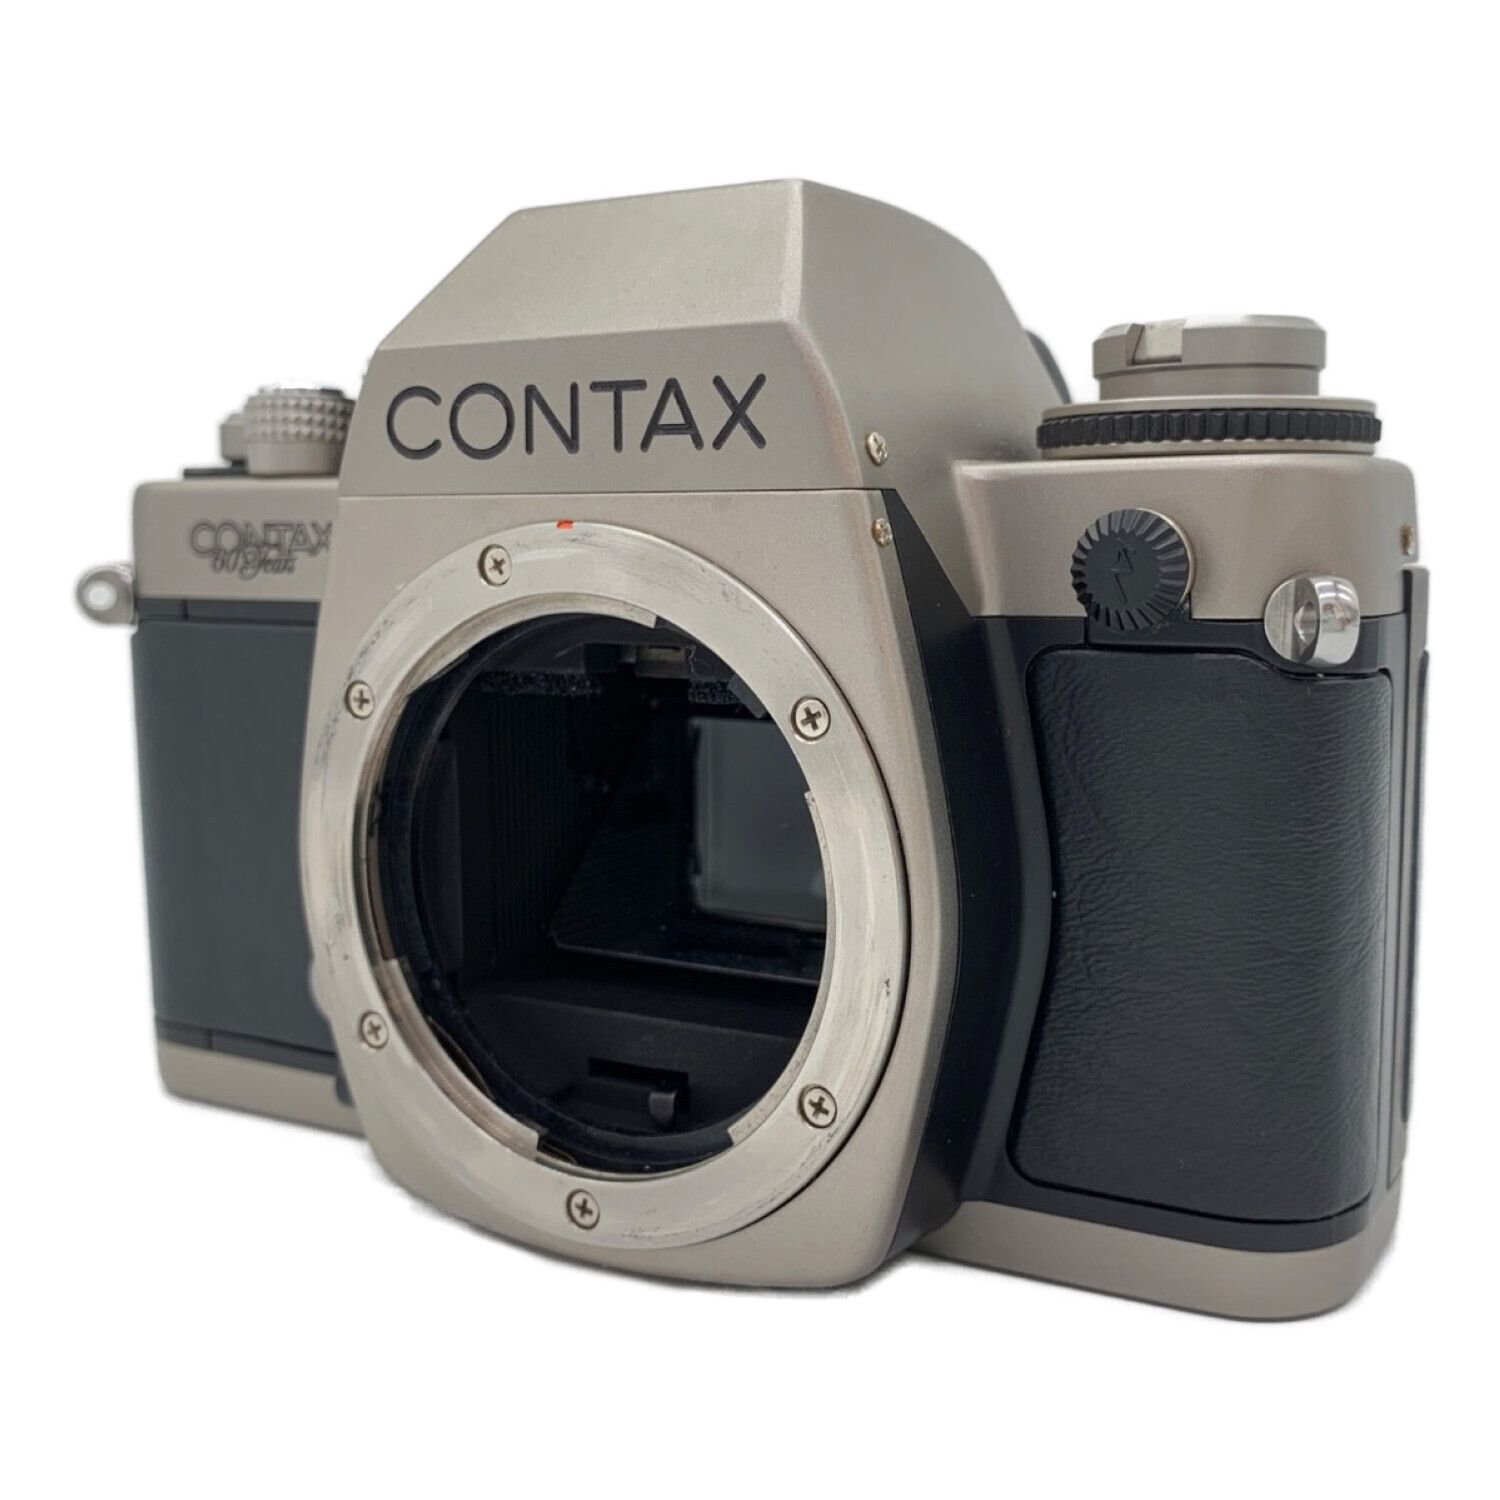 CONTAX (コンタックス) フィルムカメラ S2 60周年記念モデル 007325